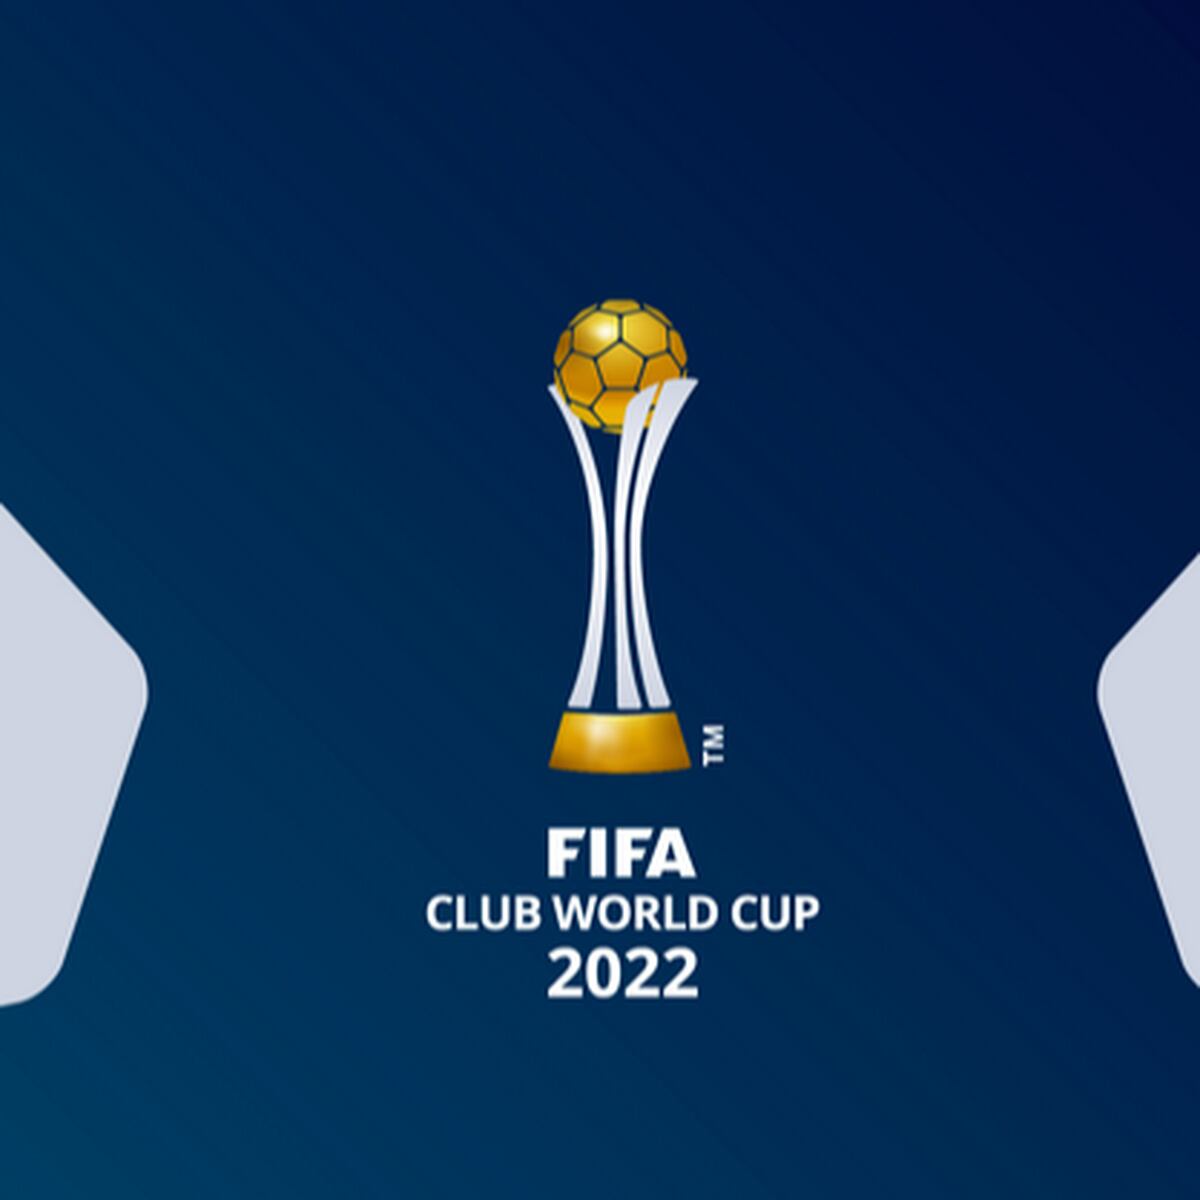 Os maiores vencedores do Mundial de Clubes - FIFA